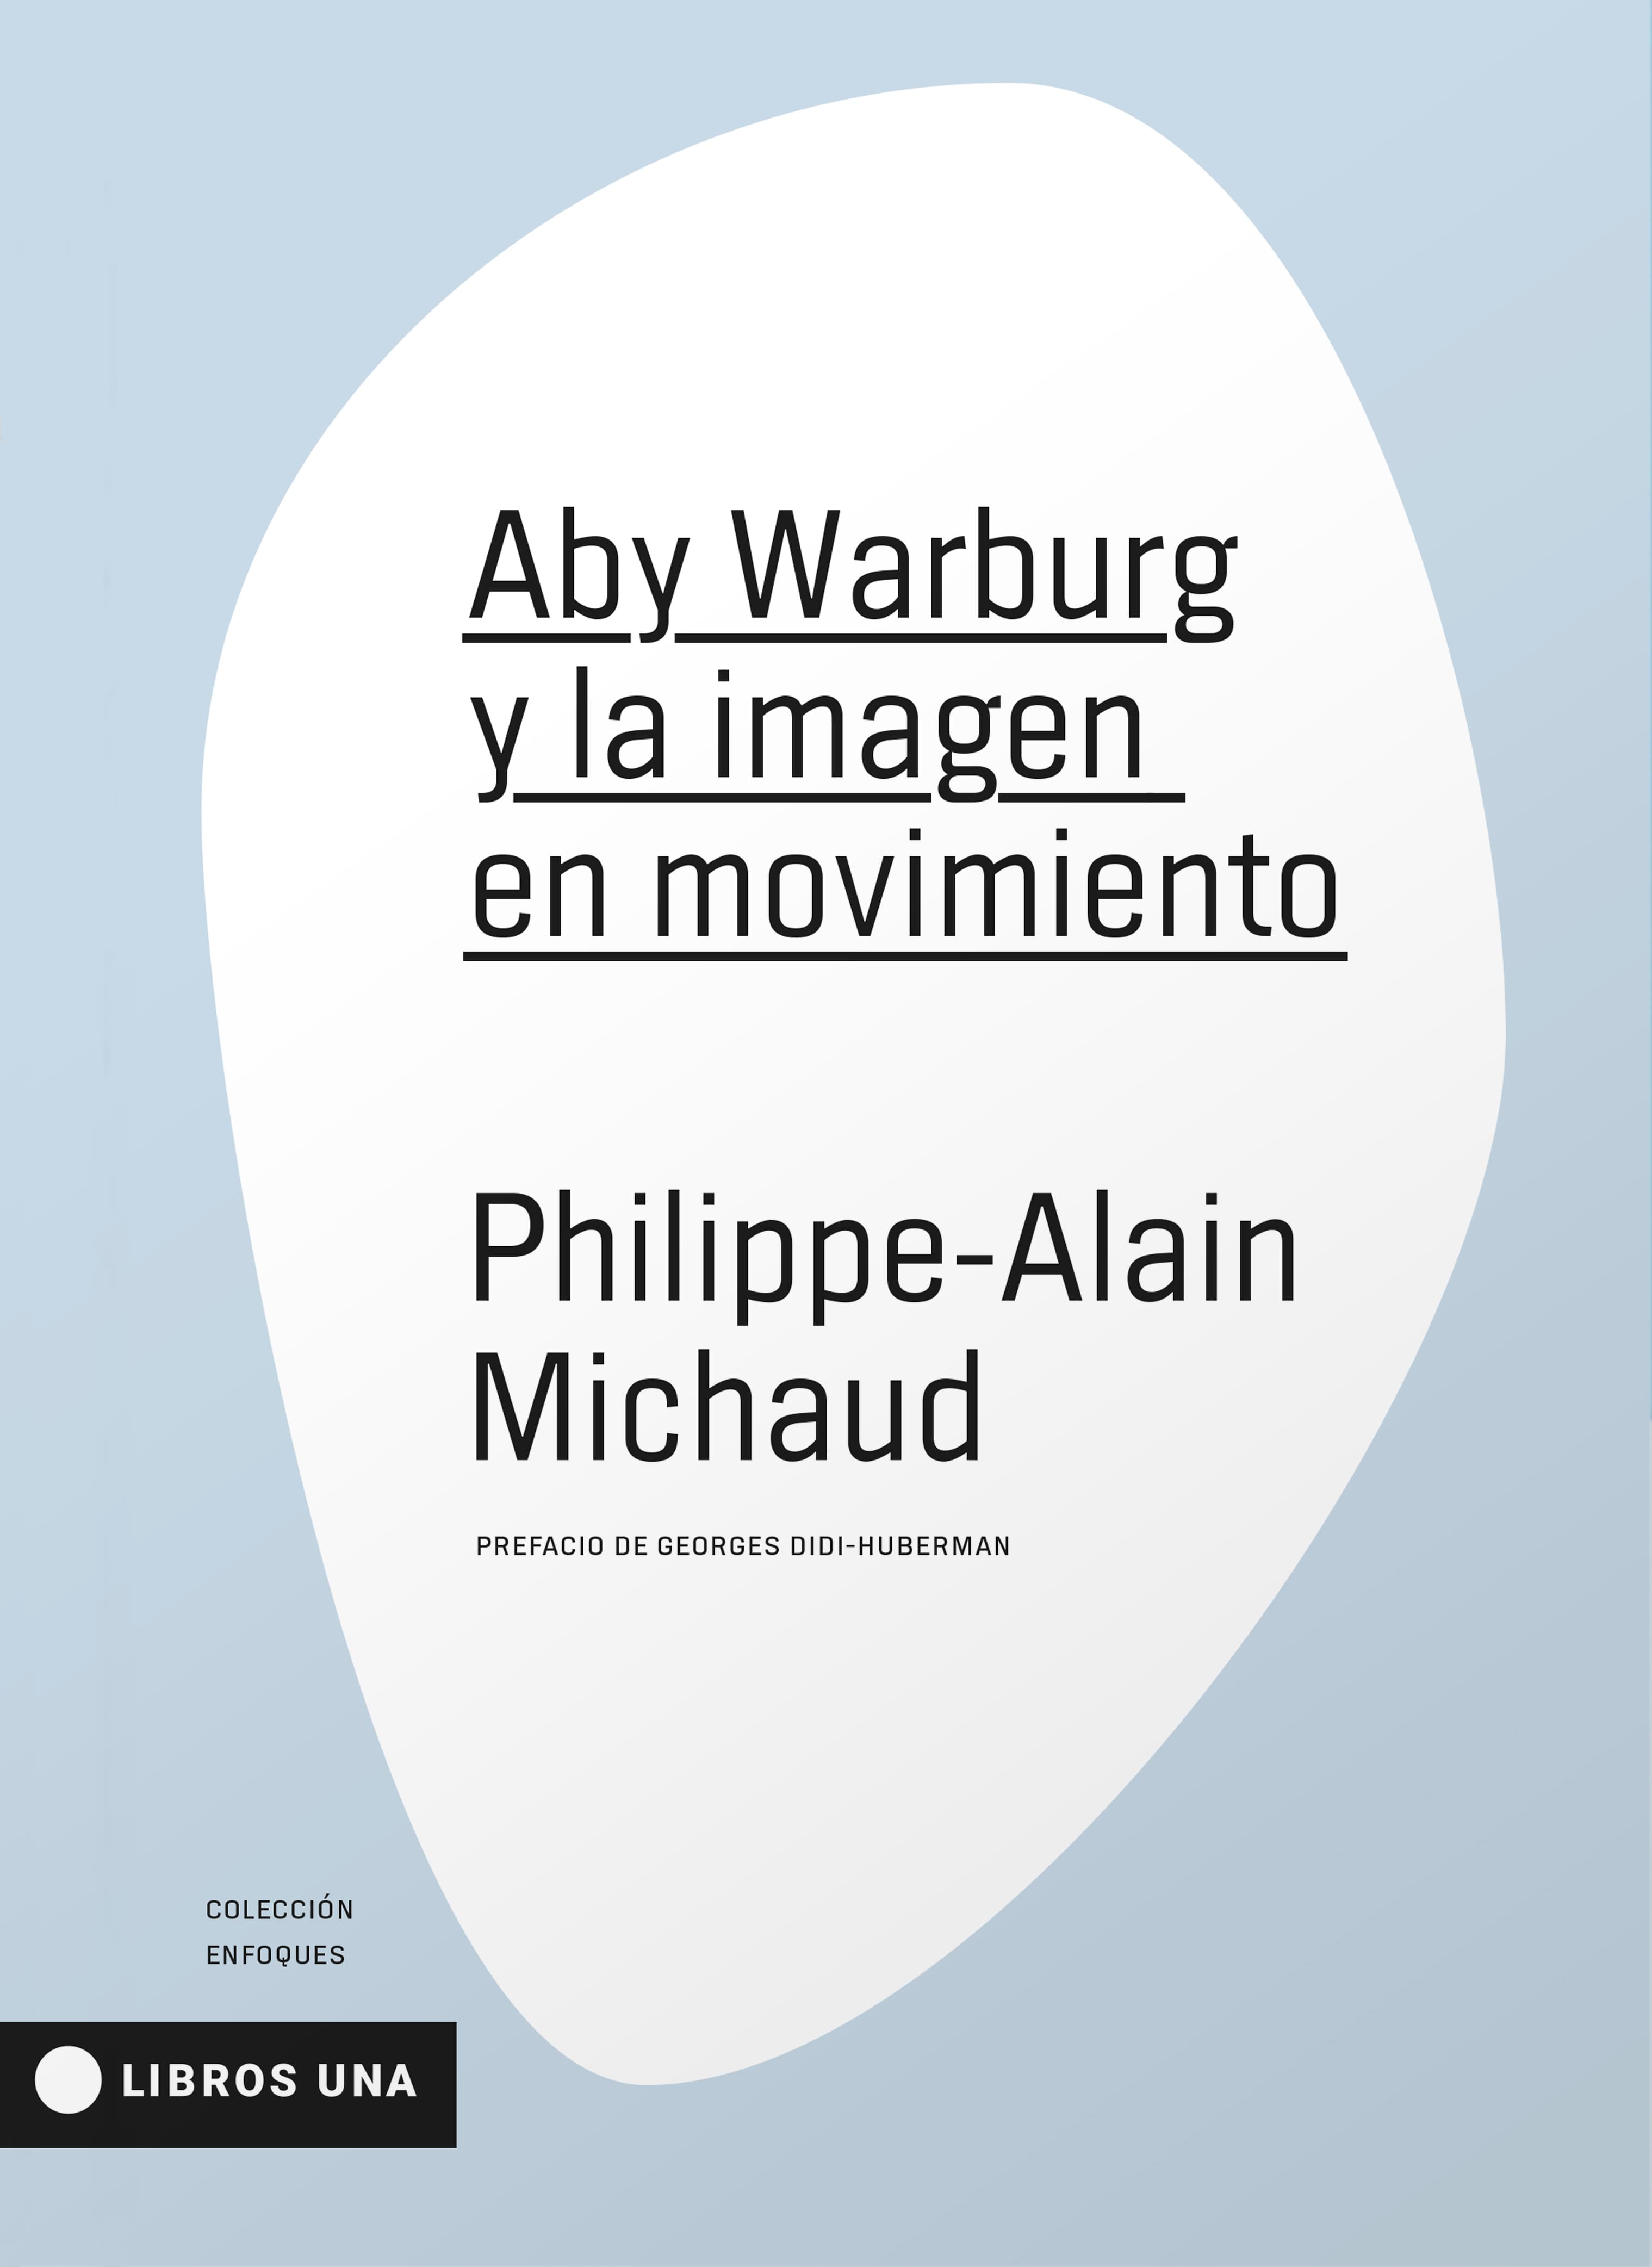 Aby Warburg y la imagen en movimiento